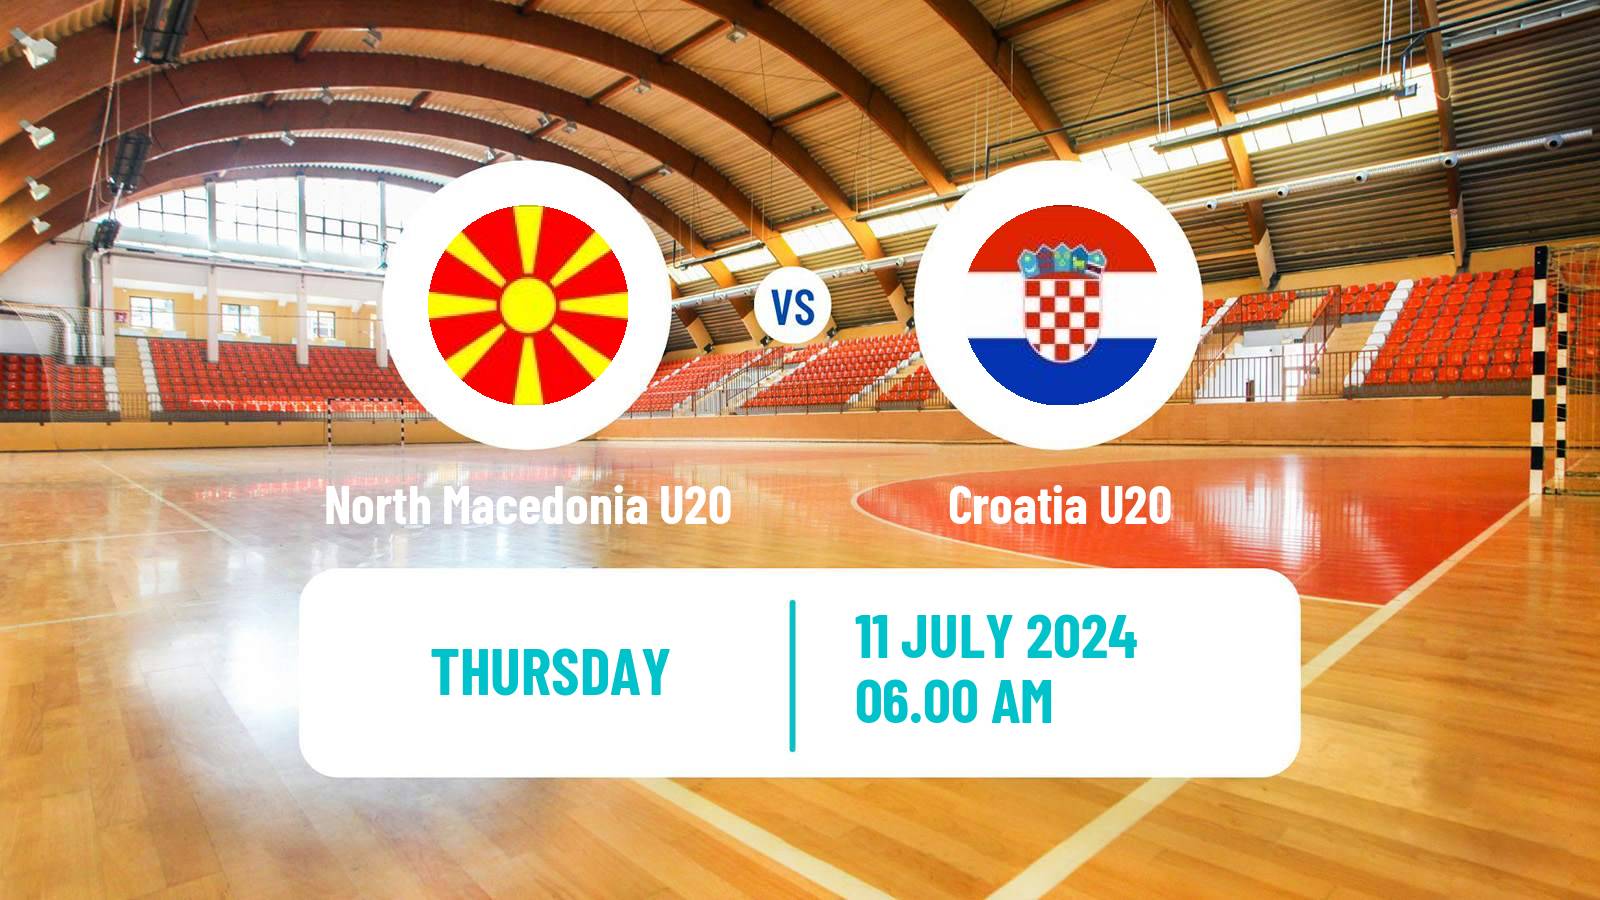 Handball European Championship U20 Handball North Macedonia U20 - Croatia U20